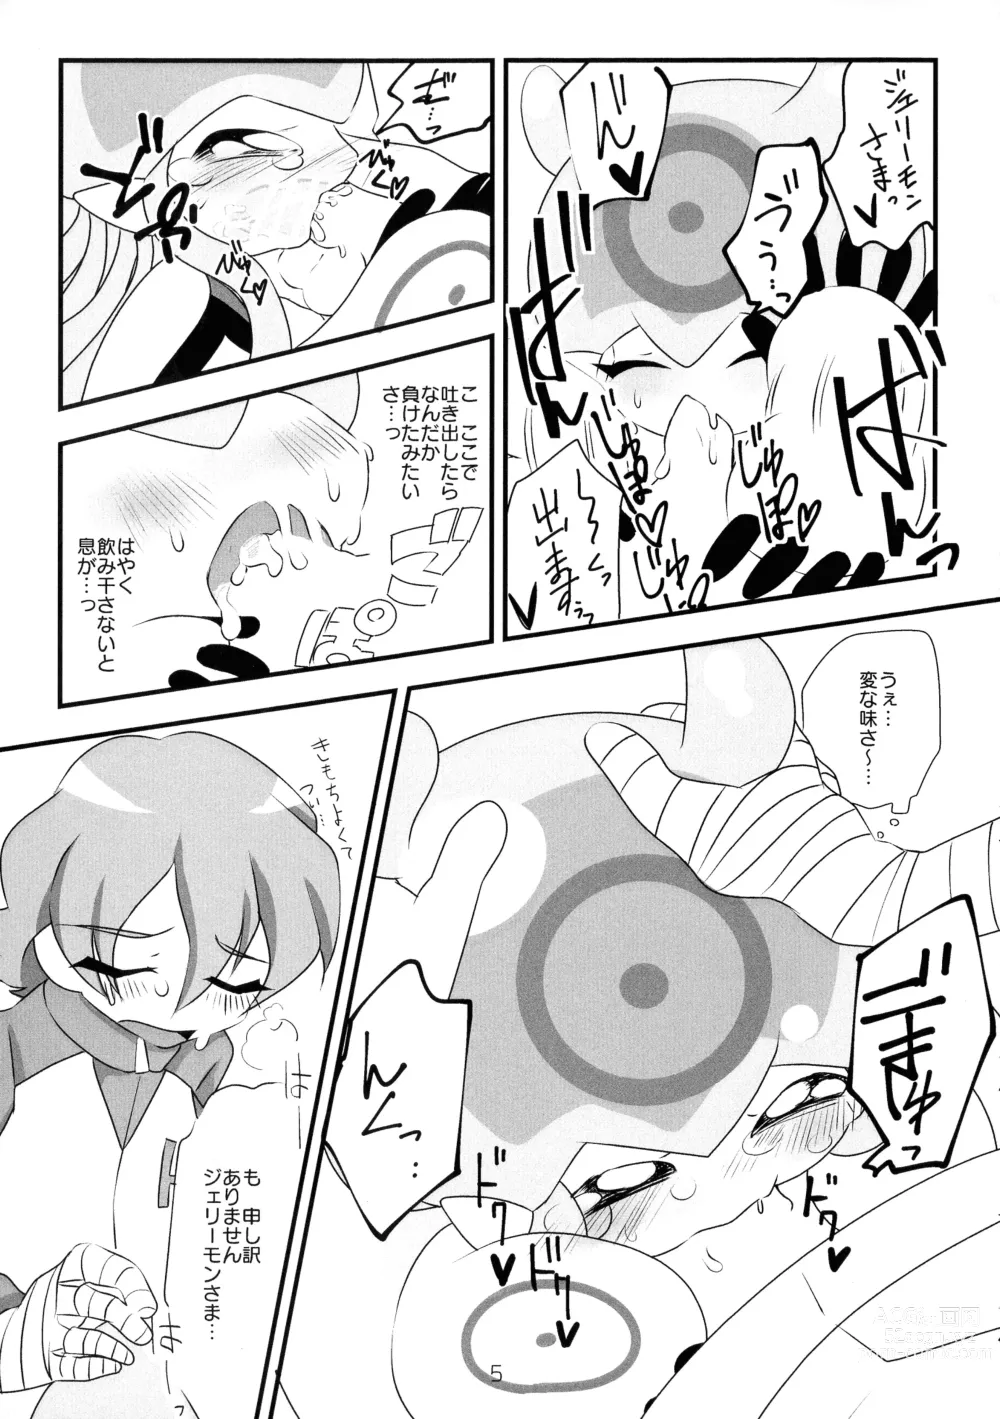 Page 6 of doujinshi Chusei kokoro ikusei gairon 2